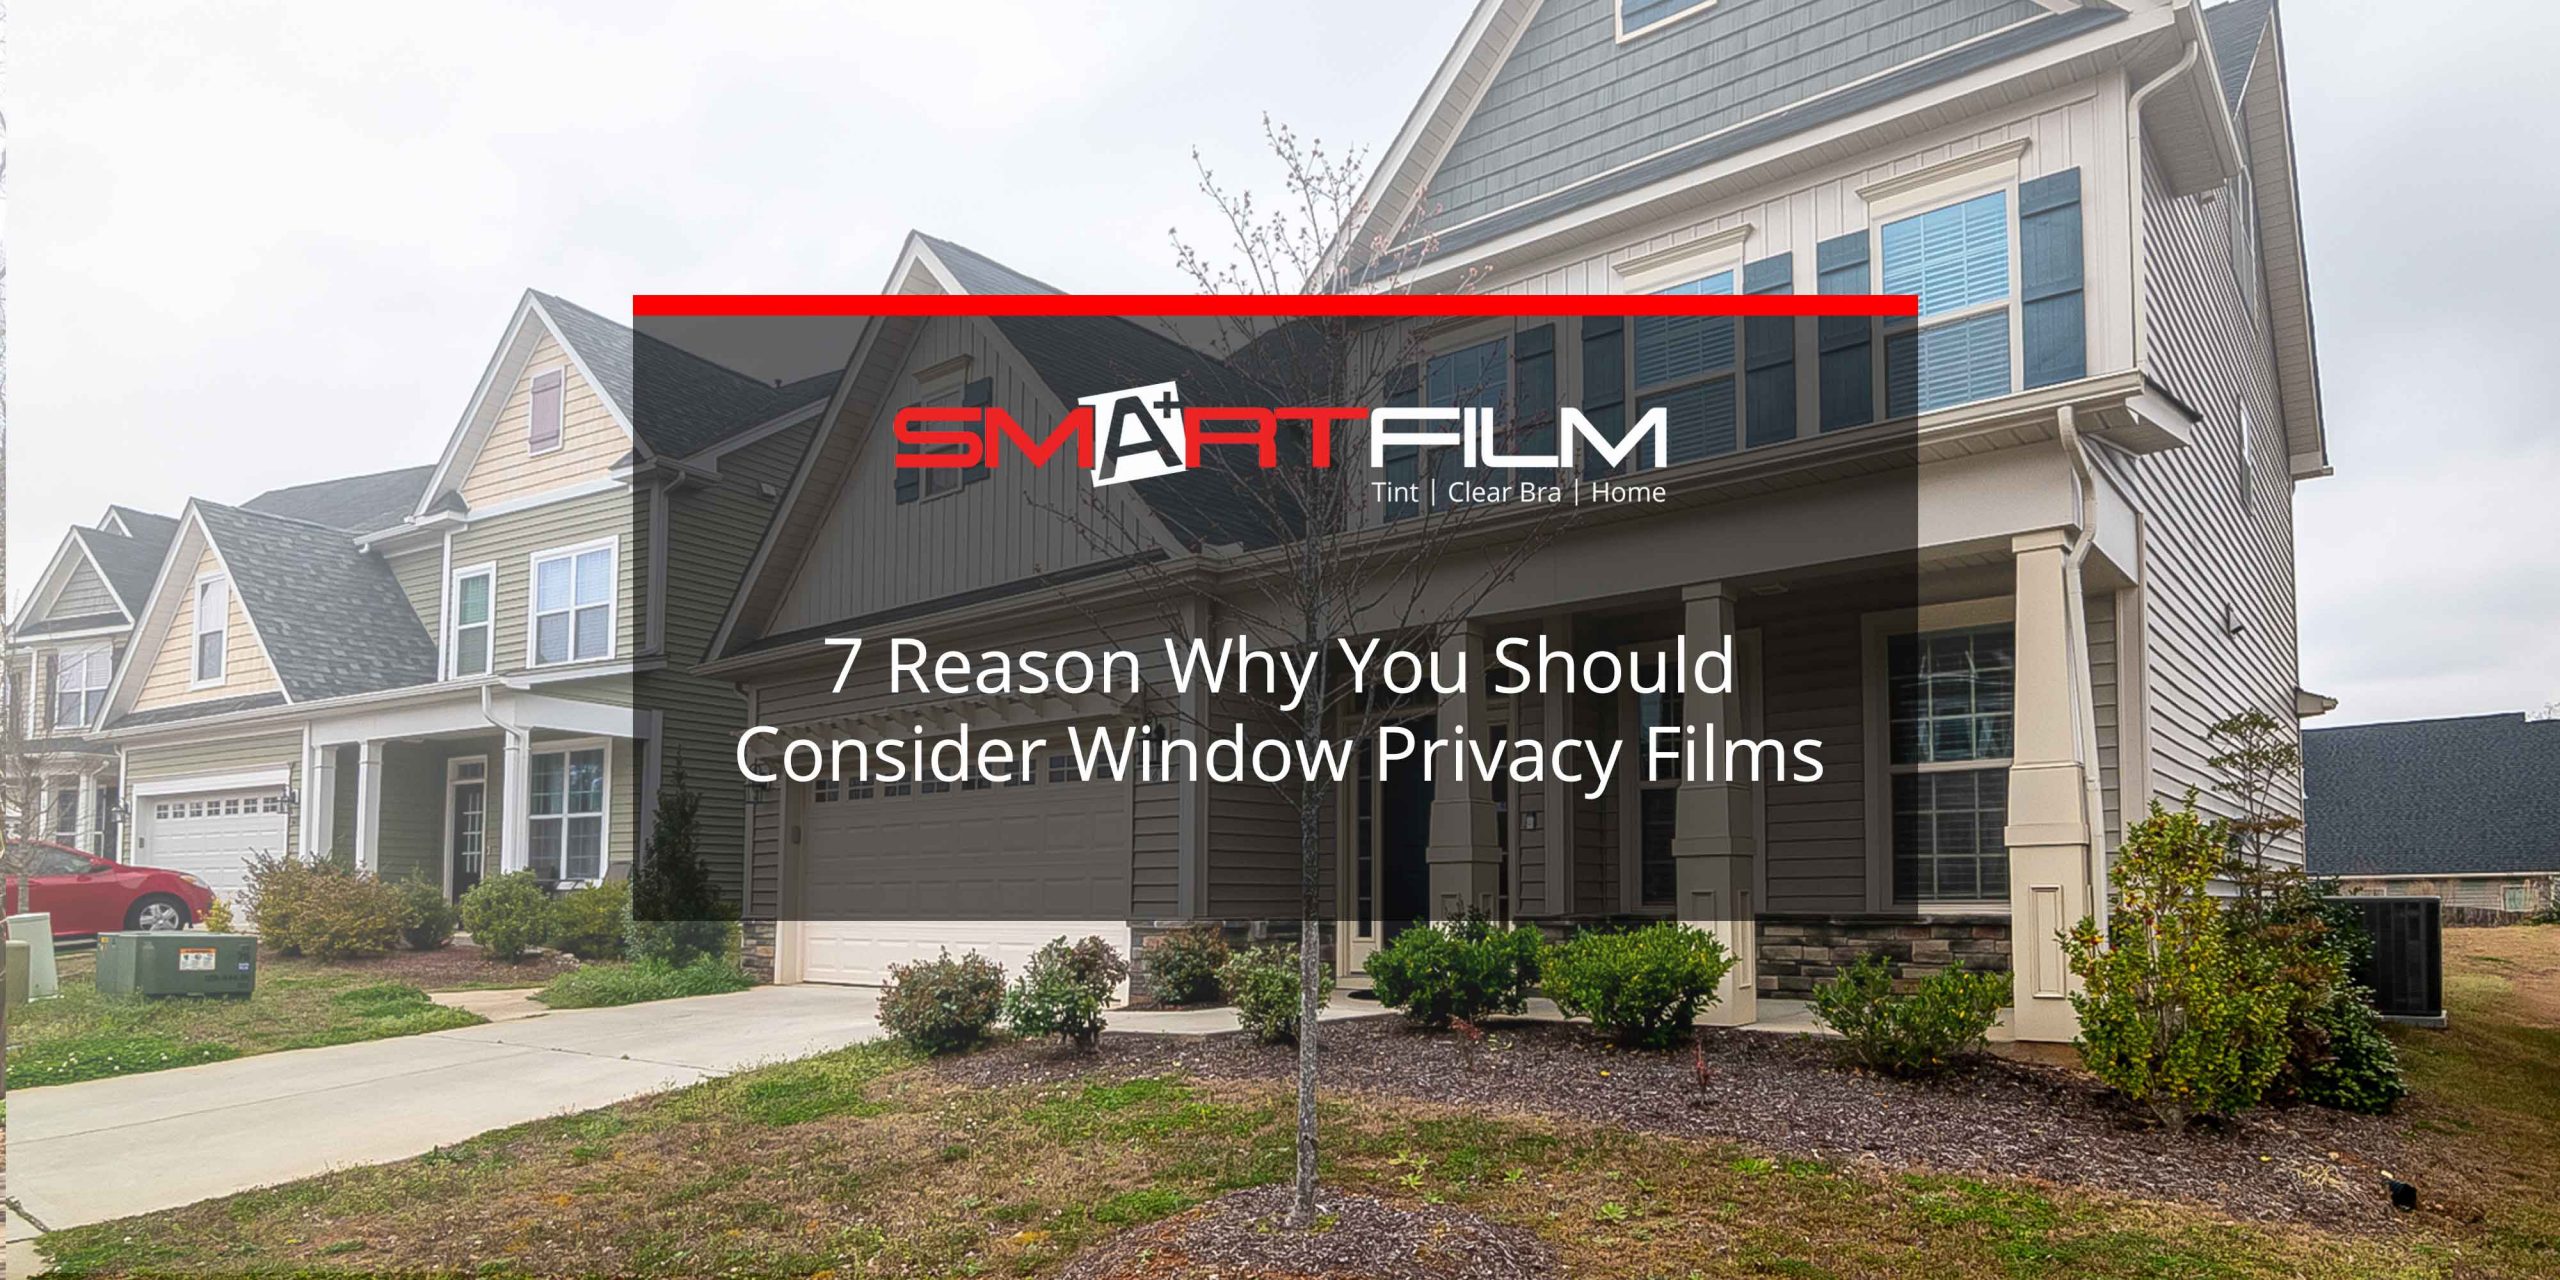 window privacy films